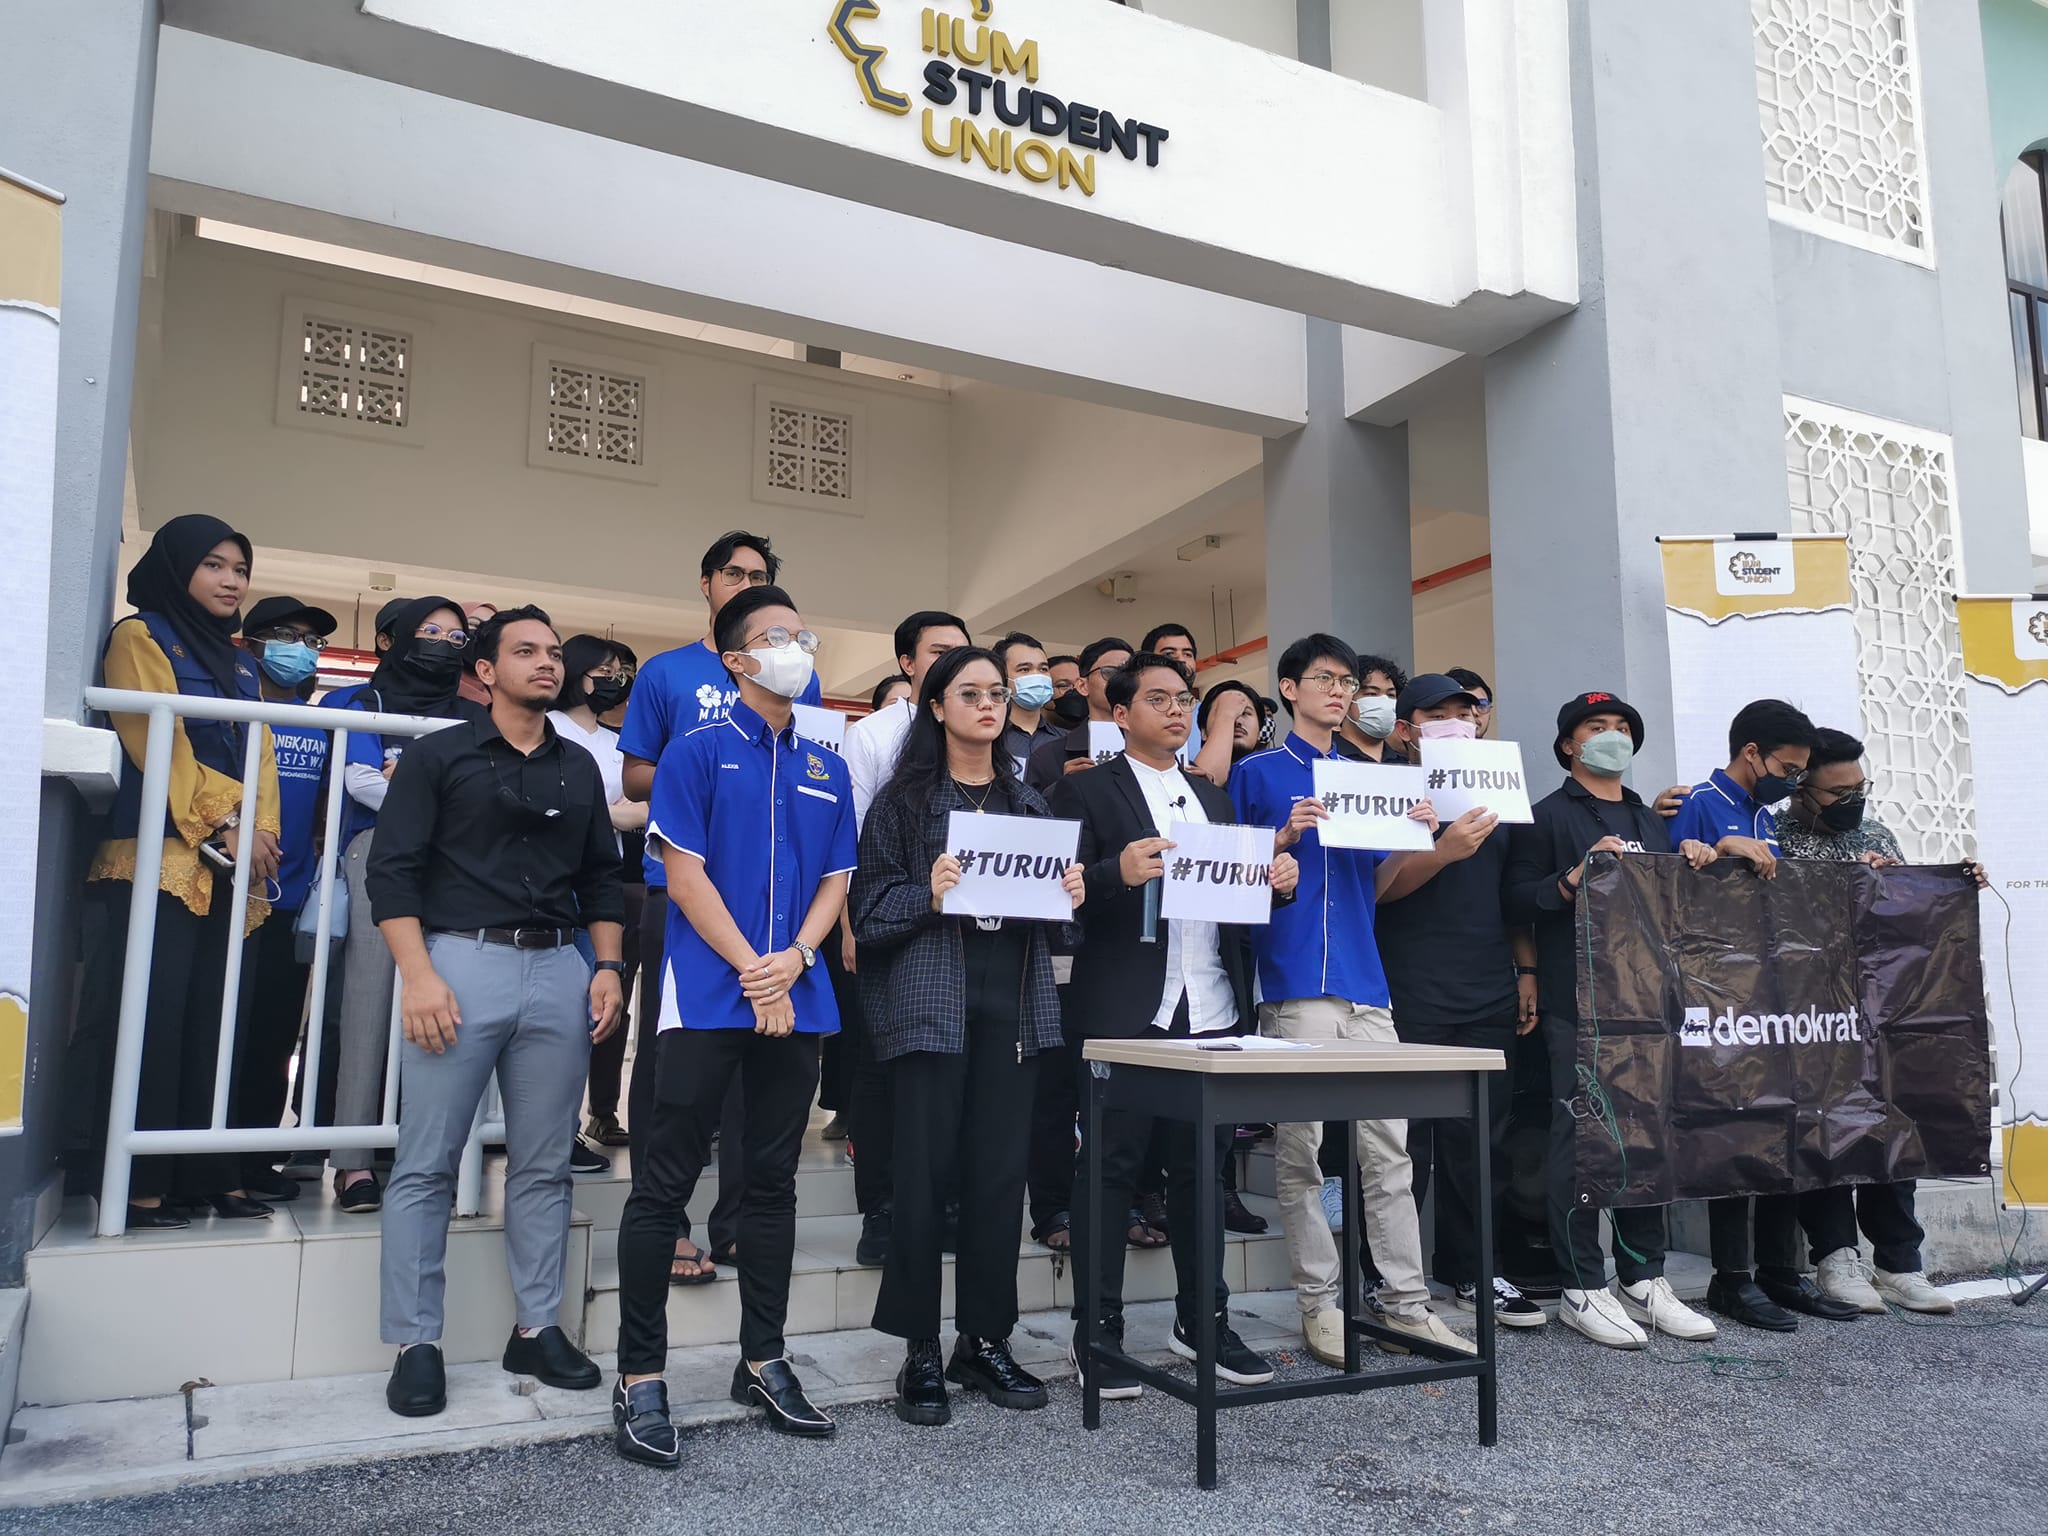 百物涨价 21学生组织提5大诉求反对政策